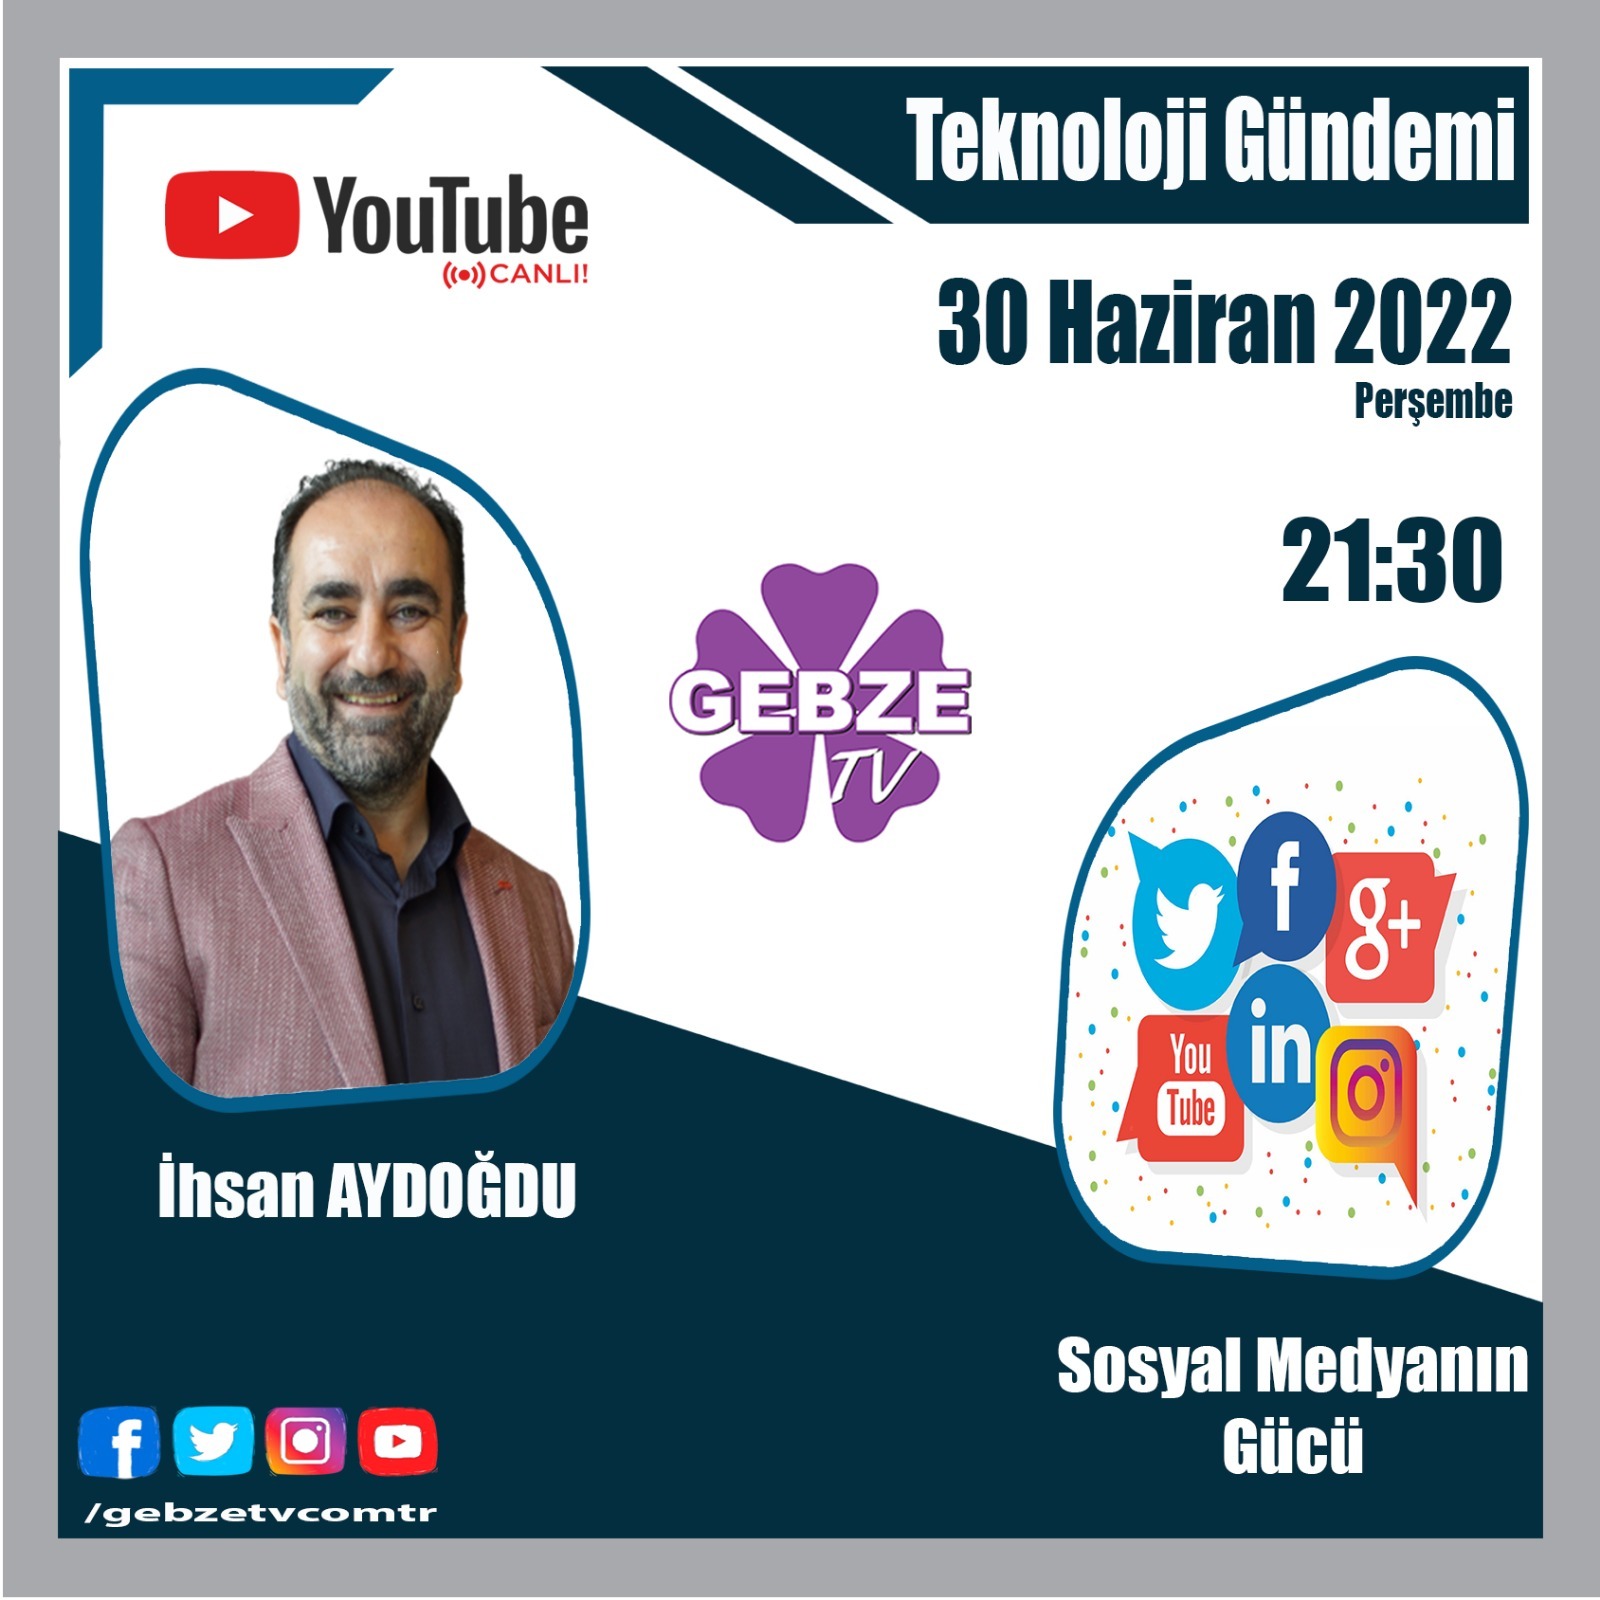 GEBZE TV - Teknoloji Gündemi / İhsan Aydoğdu - Sosyal Medyanın Gücü